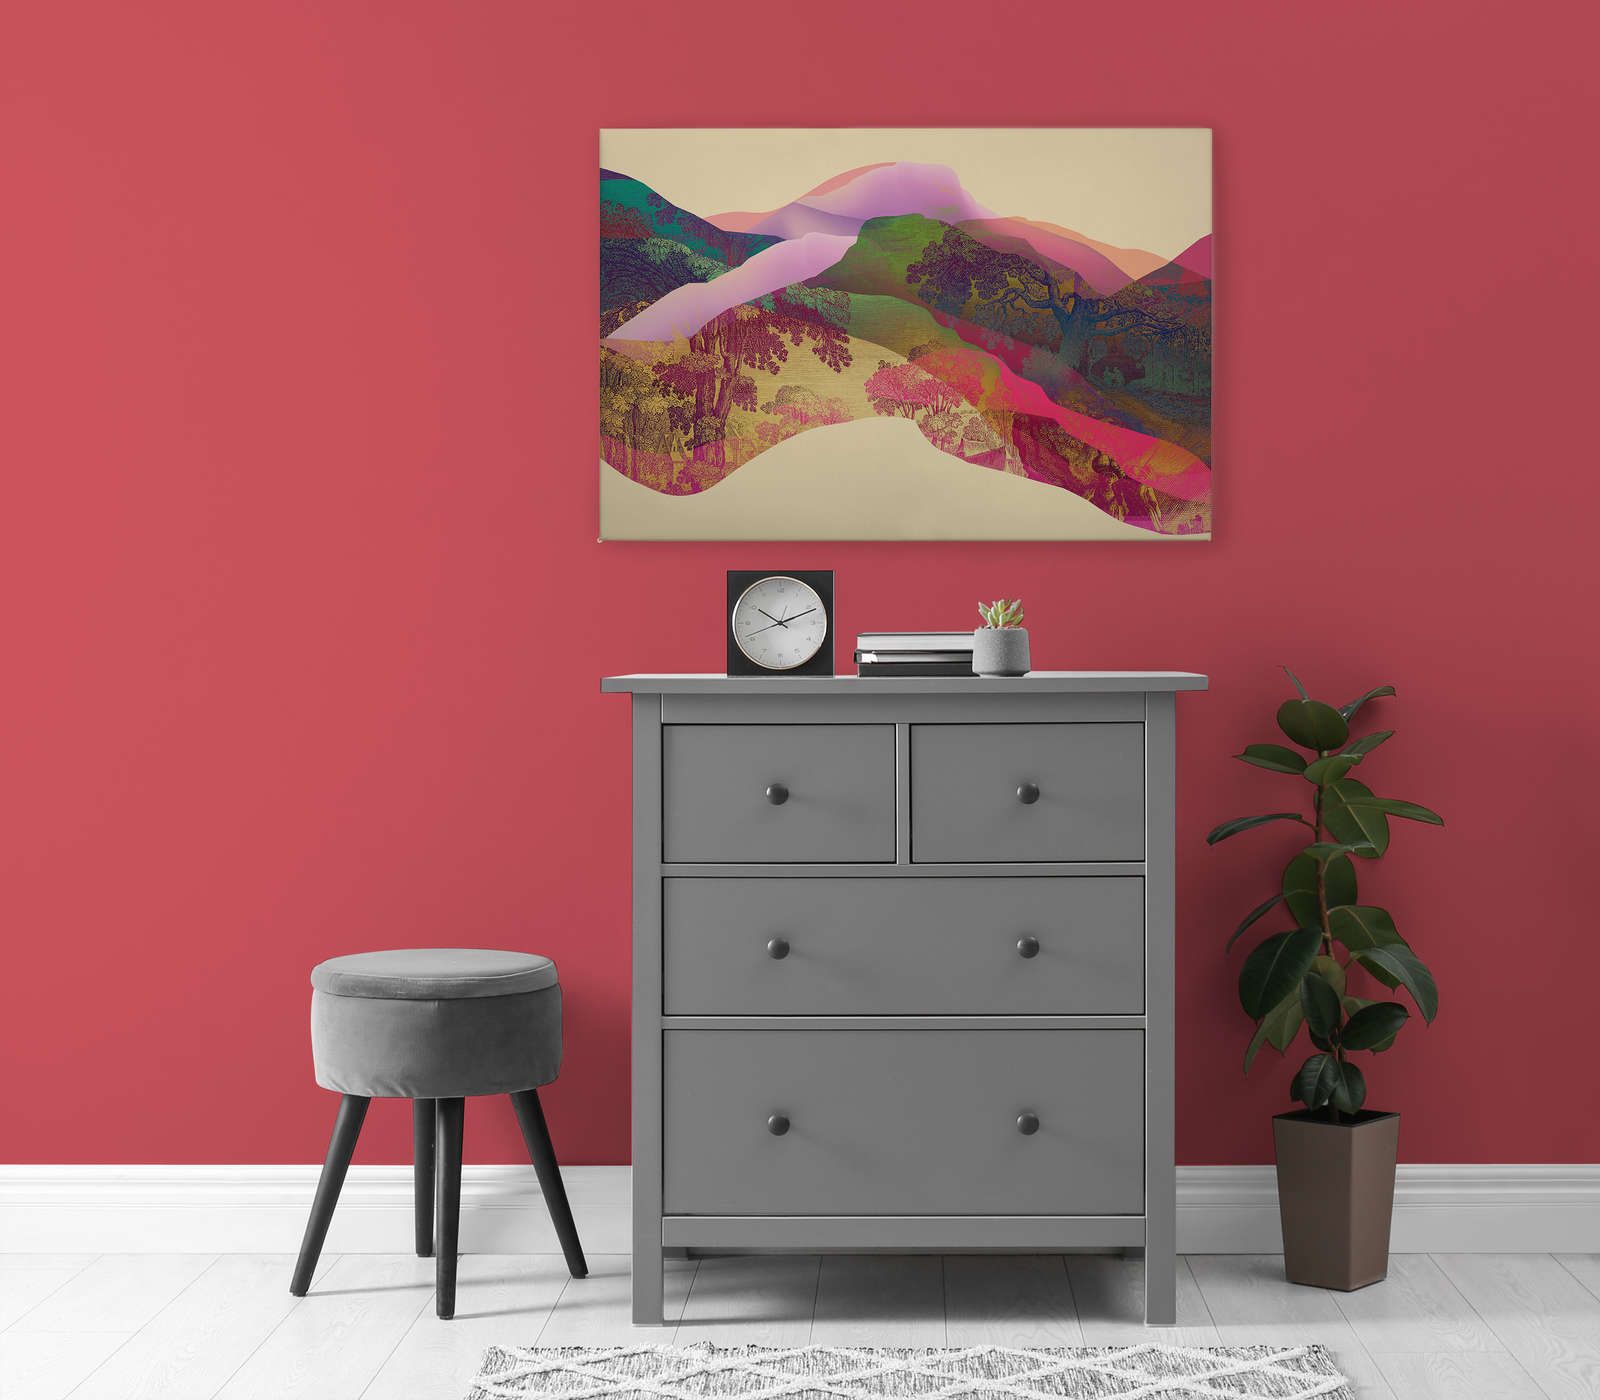             Magic Mountain 2 - Pintura en lienzo Paisaje de montaña abstracto - 0,90 m x 0,60 m
        